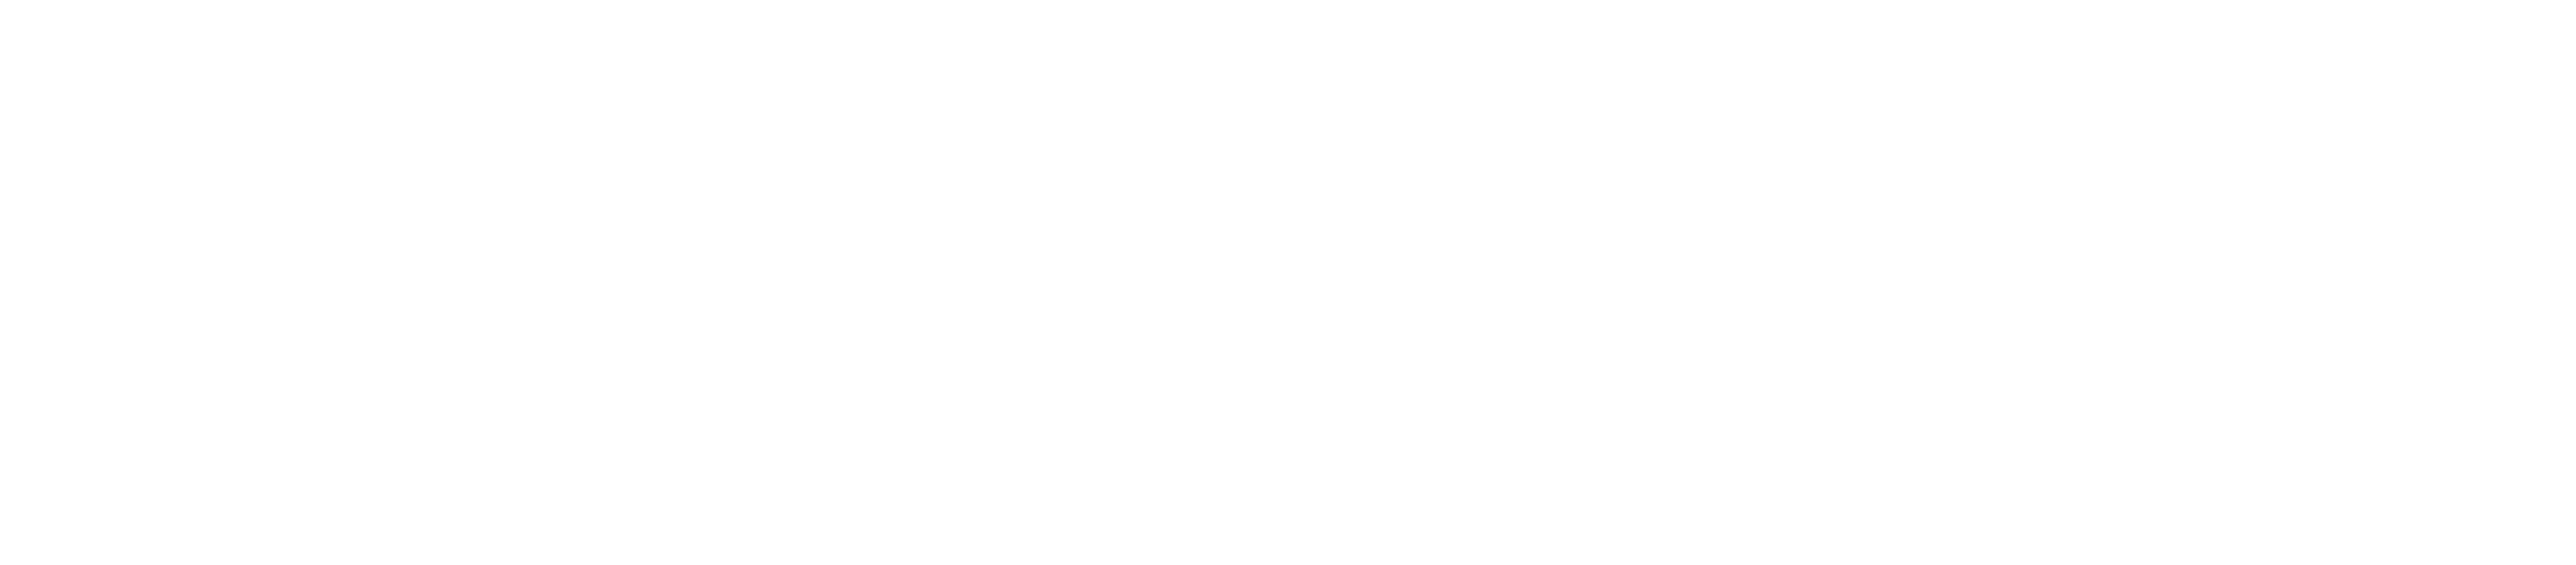 rapport logo white borderless